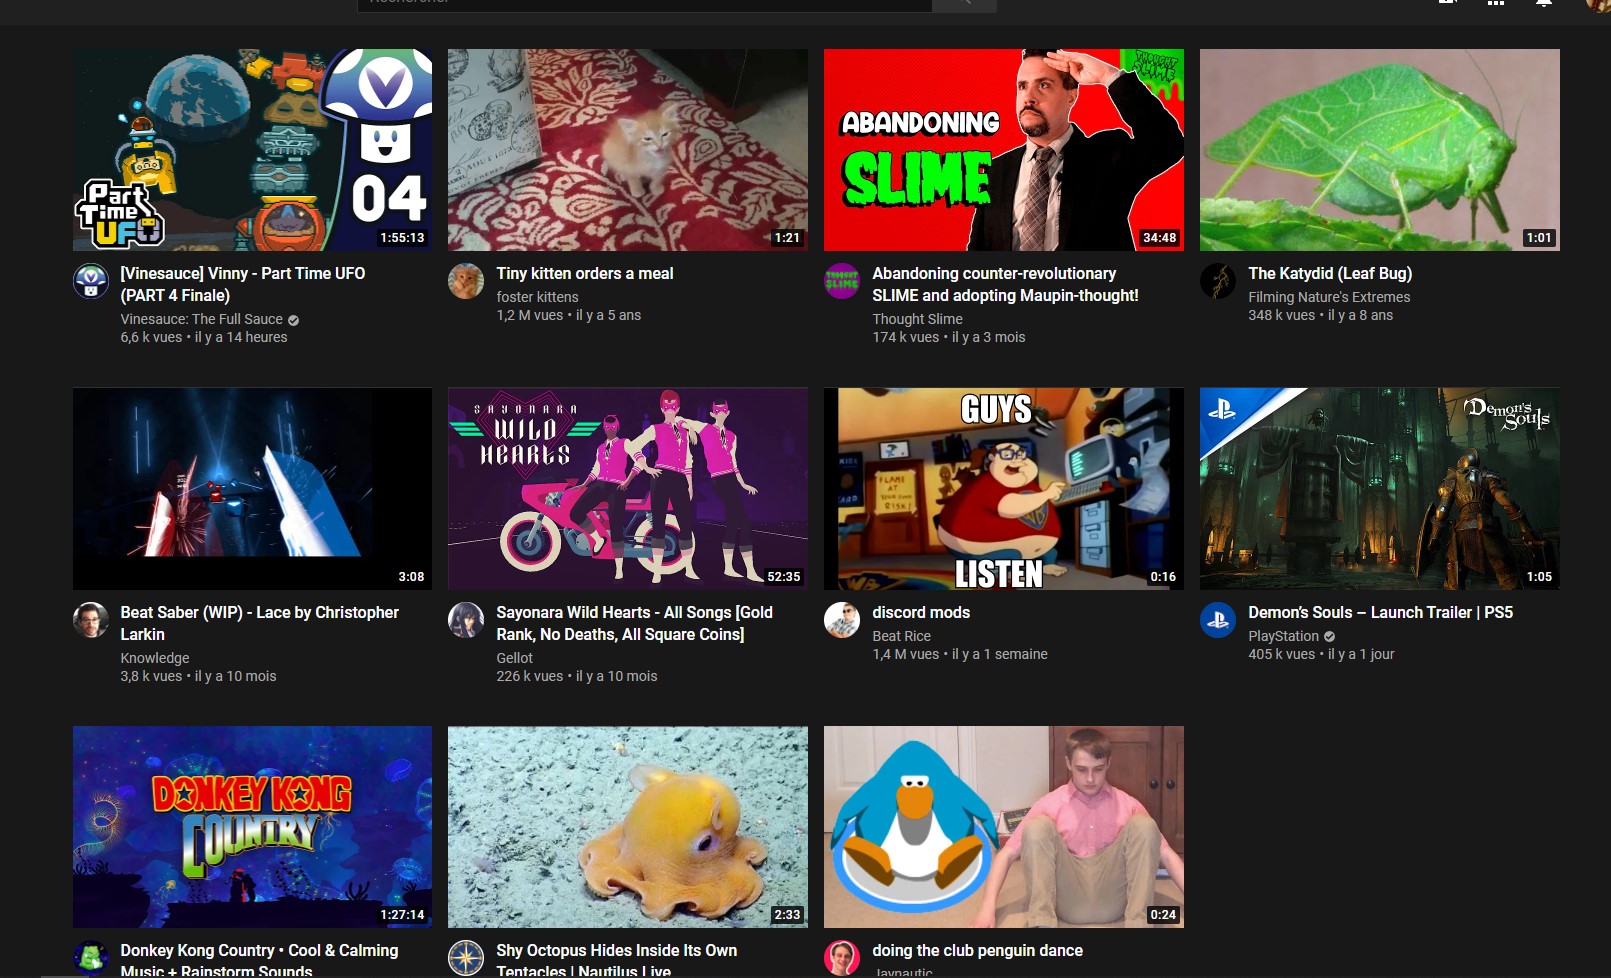 Allez sur la page d'accueil de Youtube et postez un screen des premières suggestions (hors catégories) qui apparaissent.